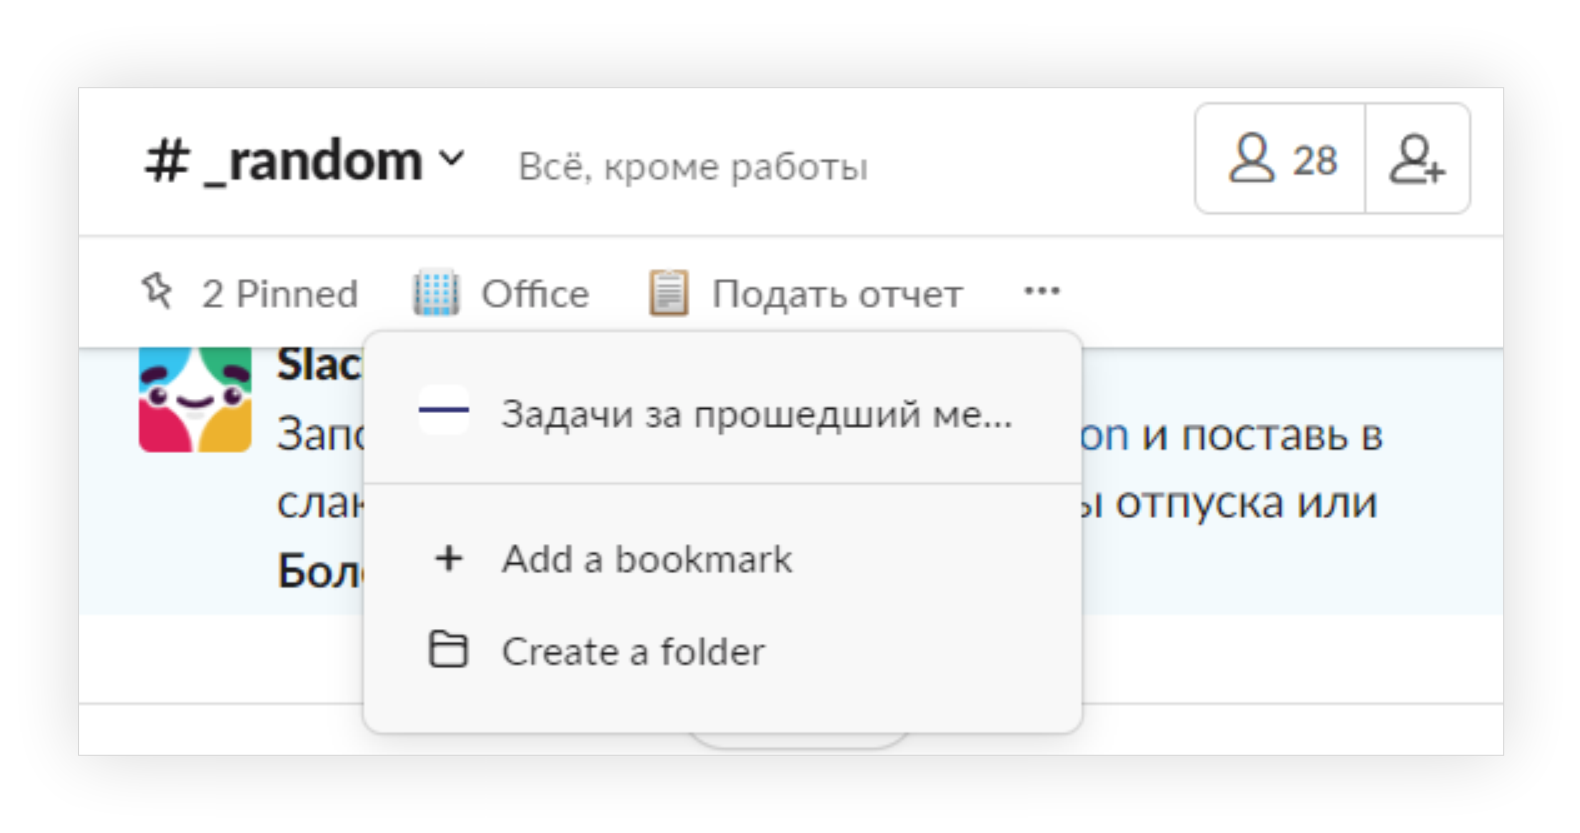 Пример использования bookmark links в Slack.